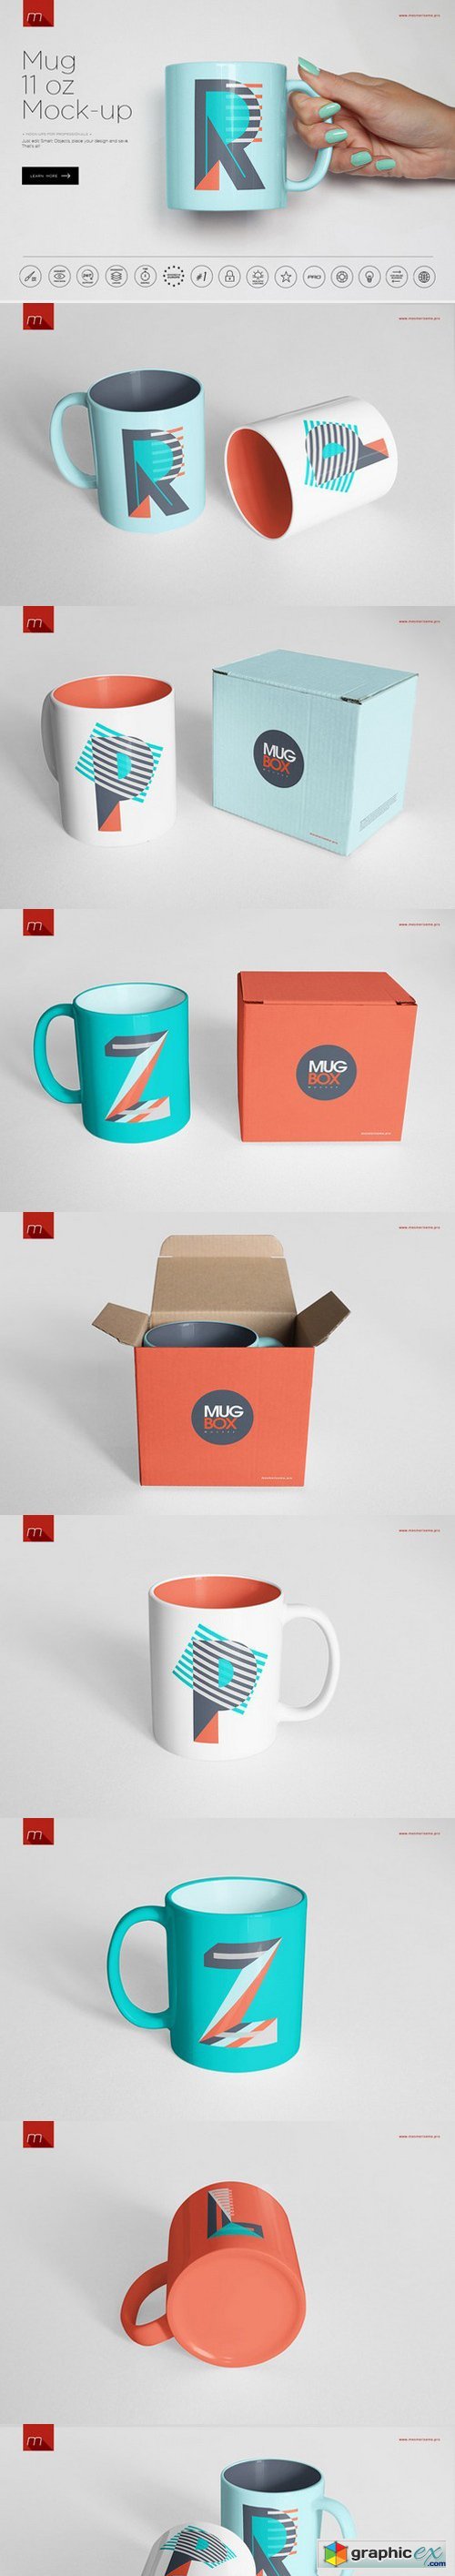 Mug 11 oz Mock-up